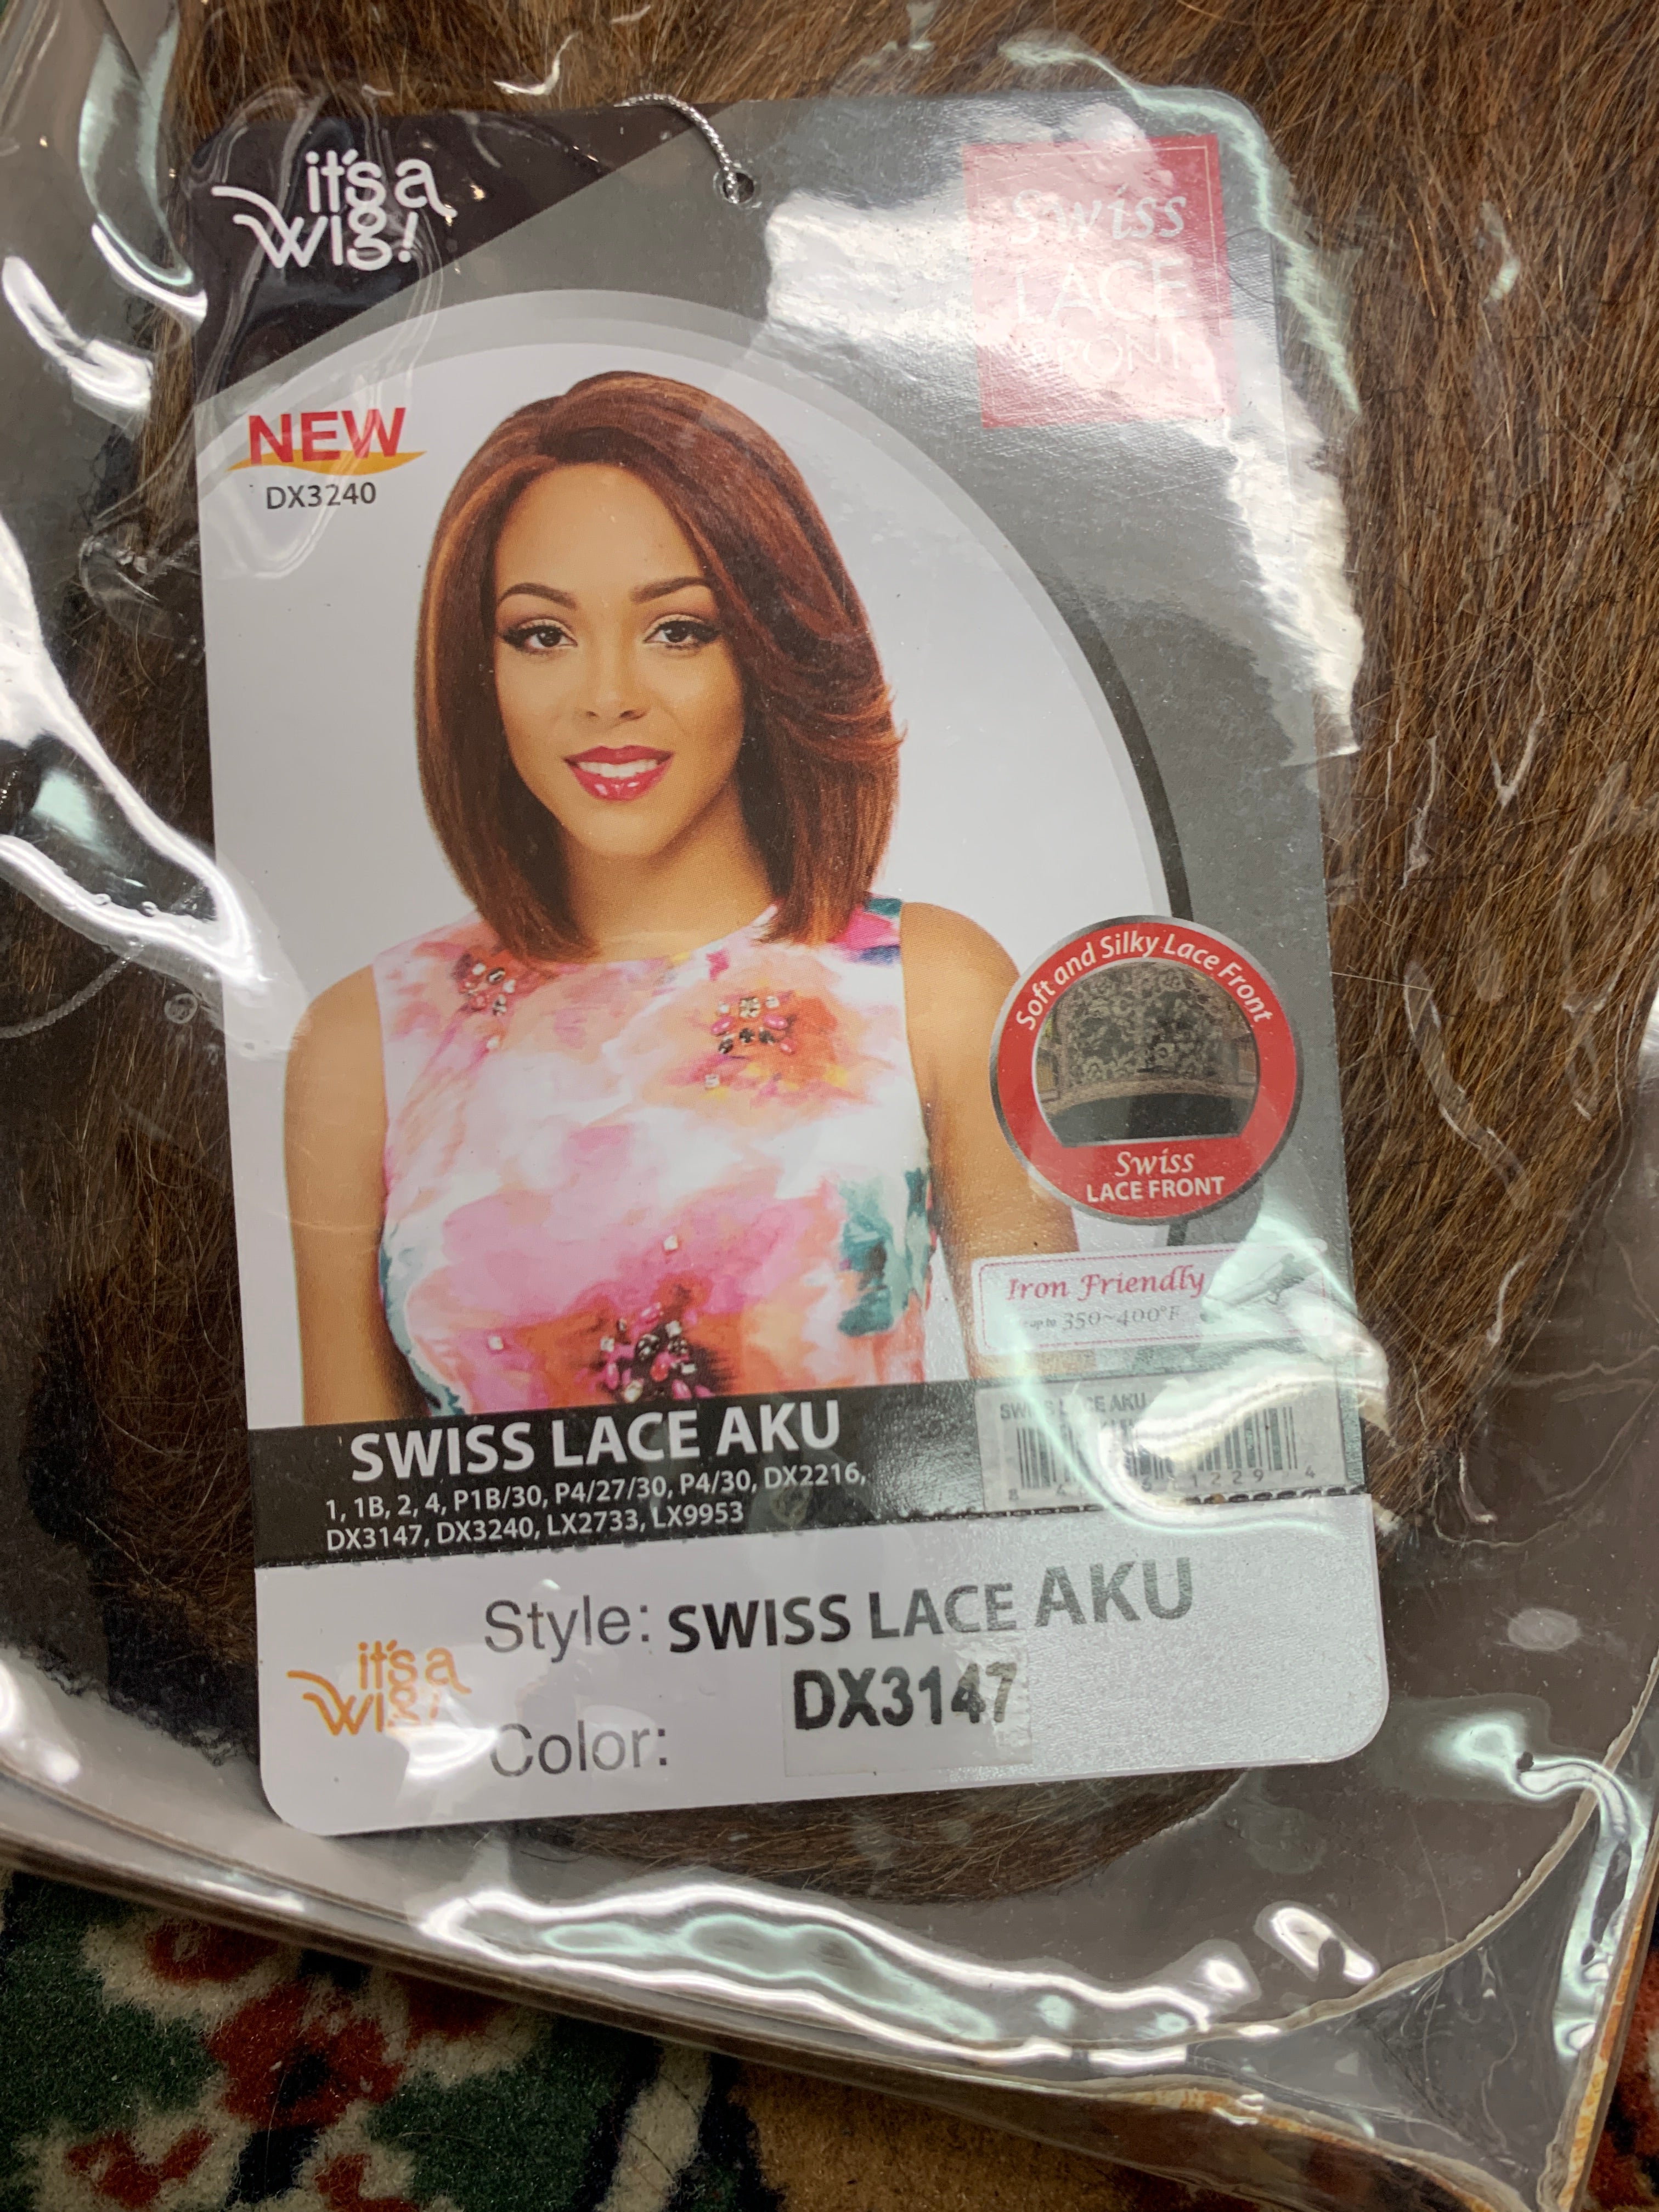 It’s a wig swiss lace aku